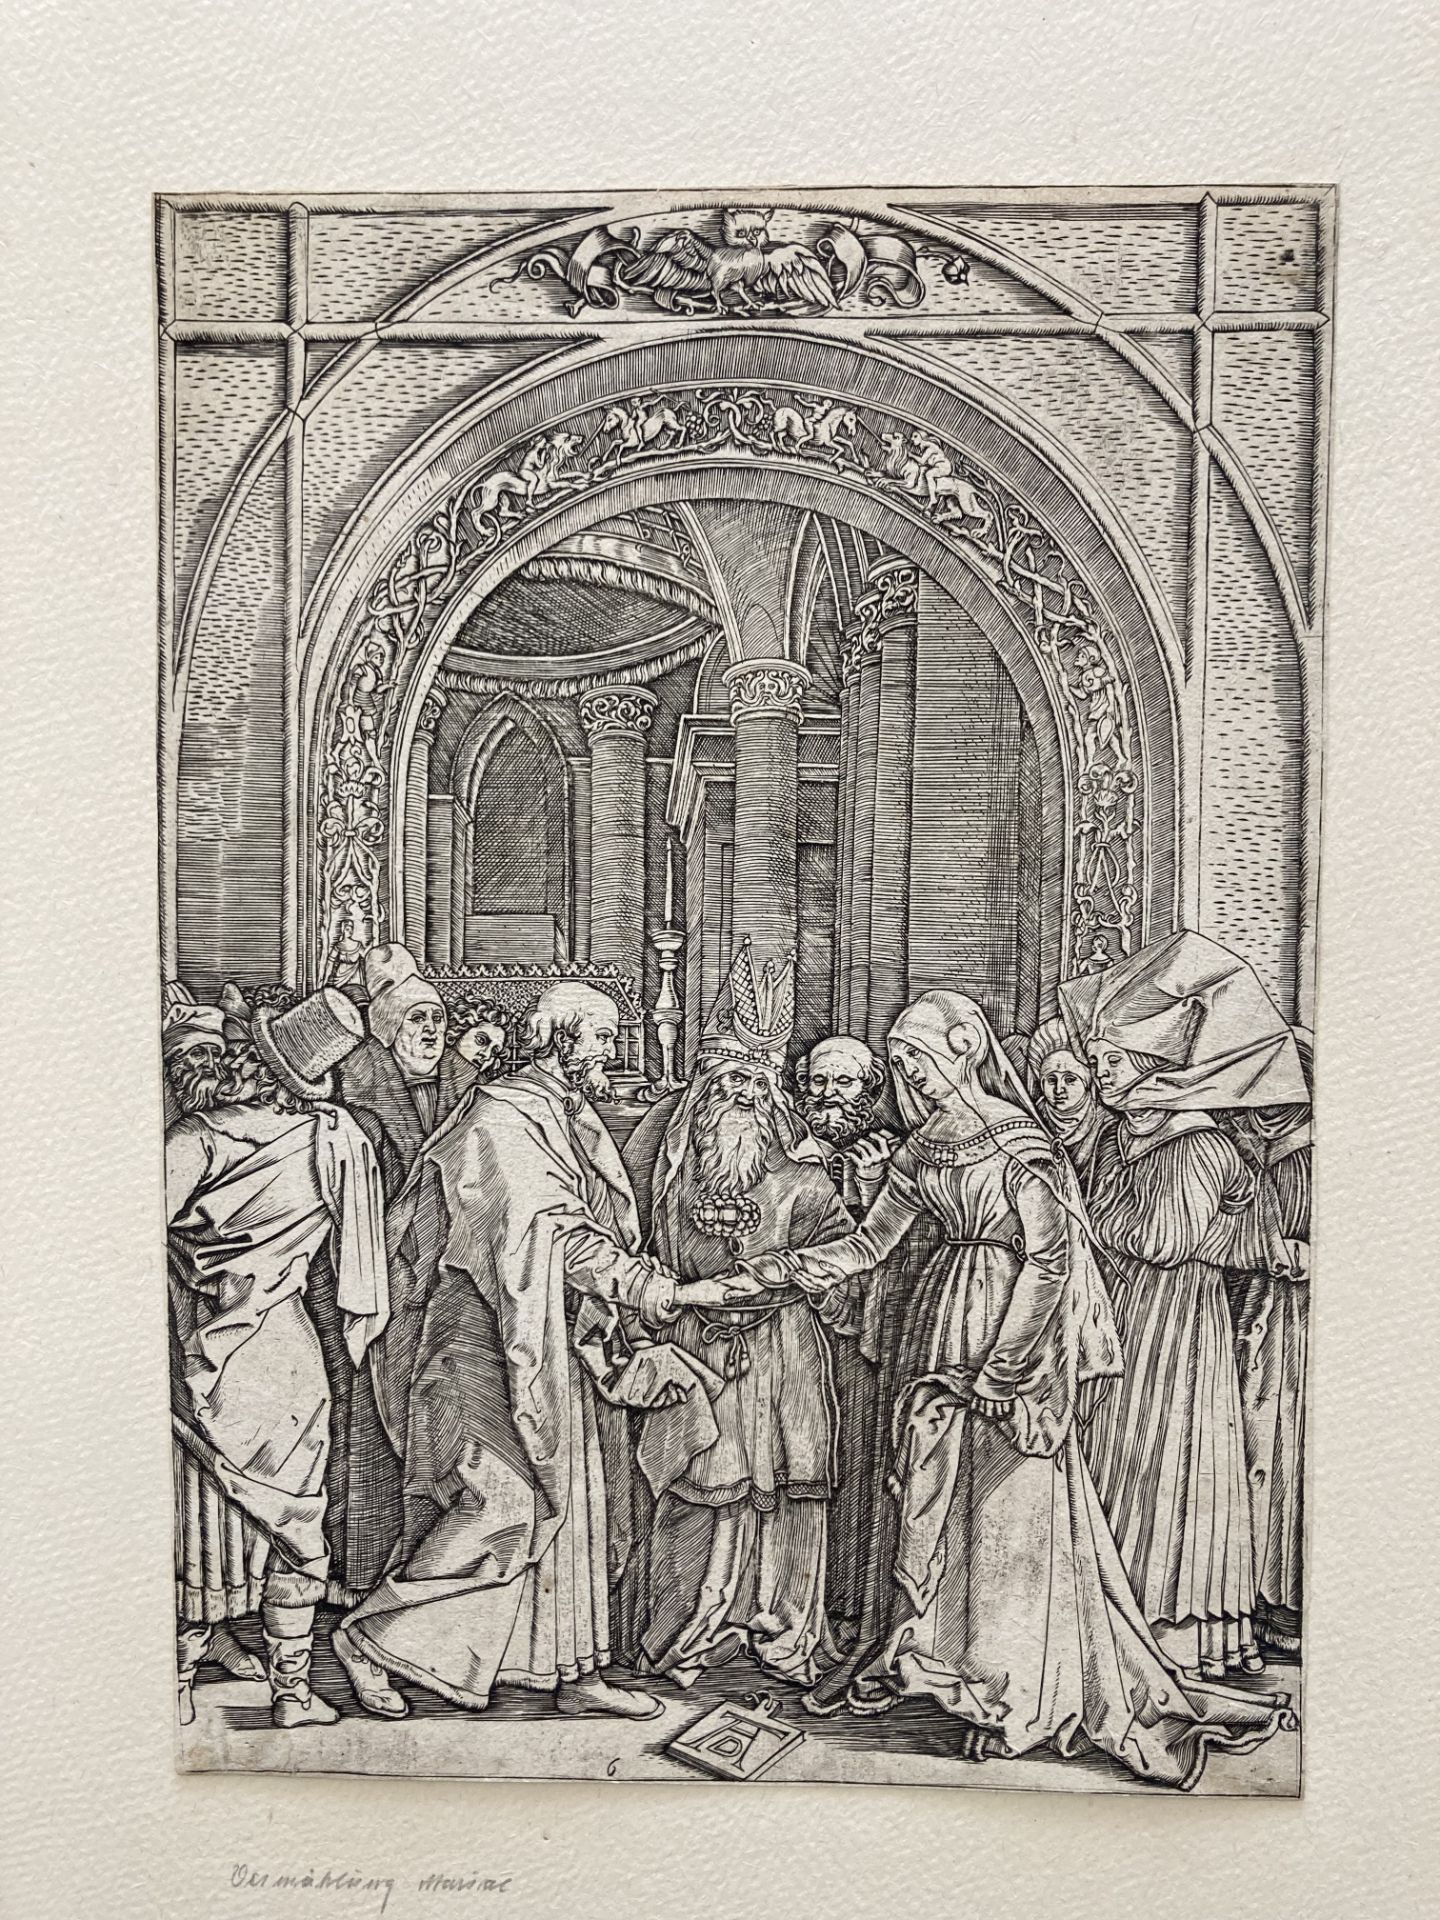 Marcantonio Raimondi ca. 1480 Molinella - 1534 Bologna: Life of the Virgin - Image 15 of 20